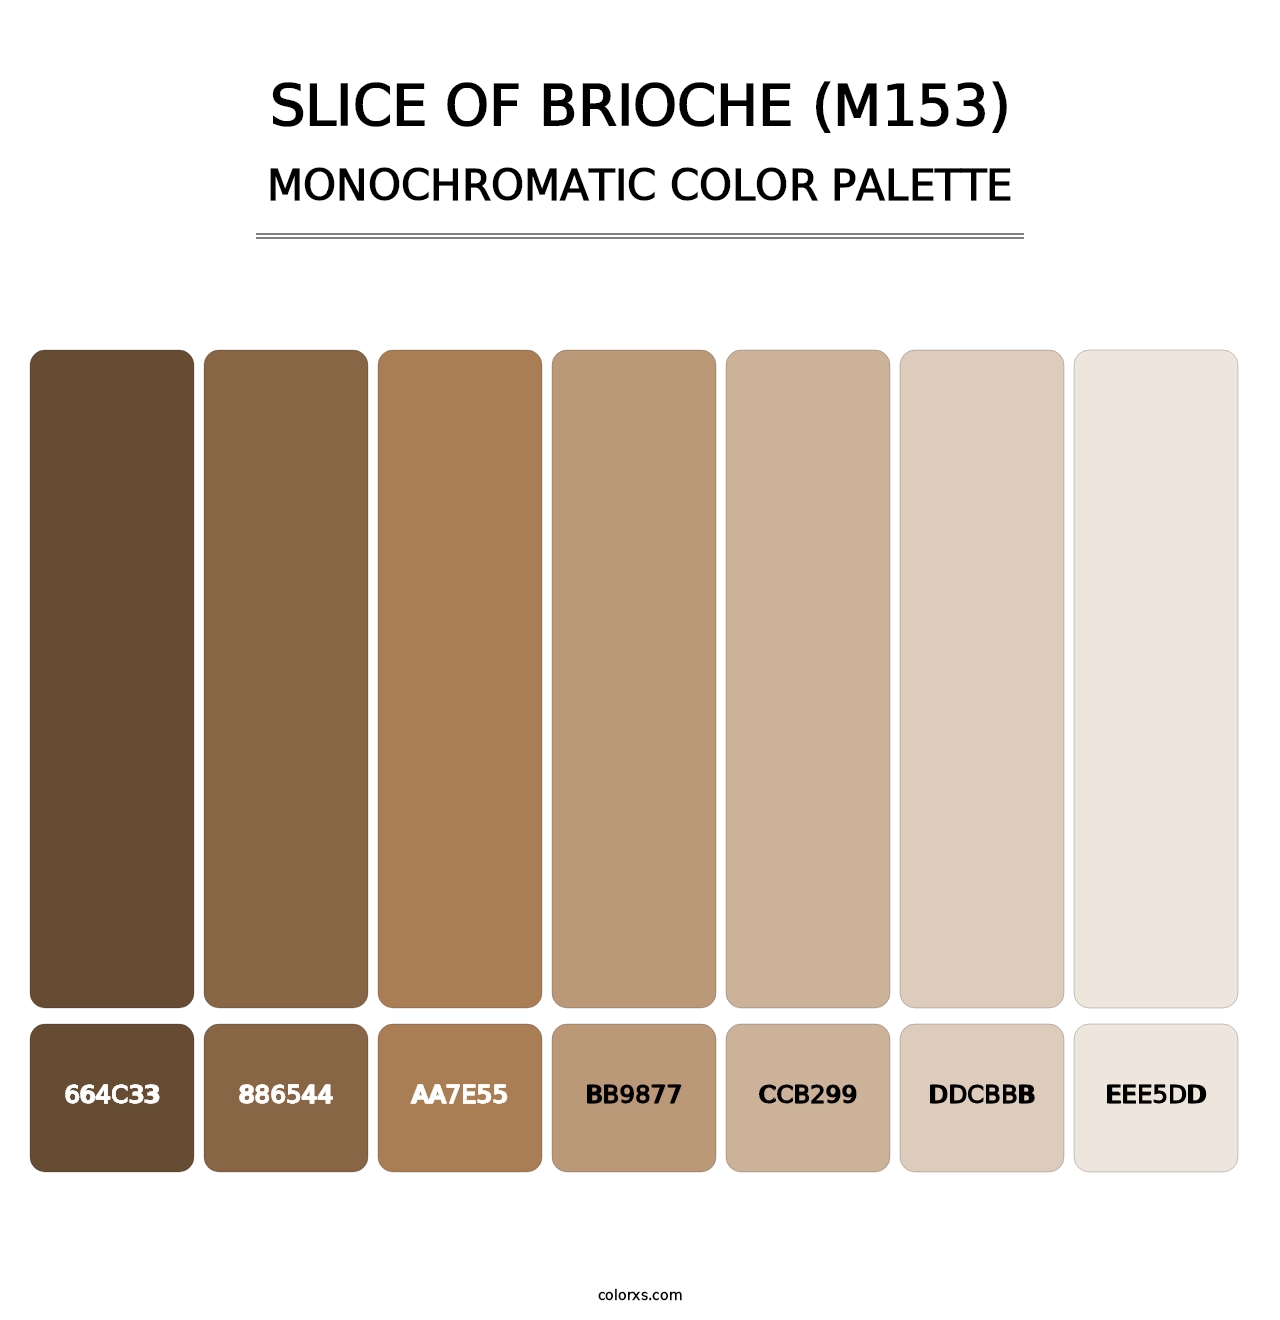 Slice of Brioche (M153) - Monochromatic Color Palette